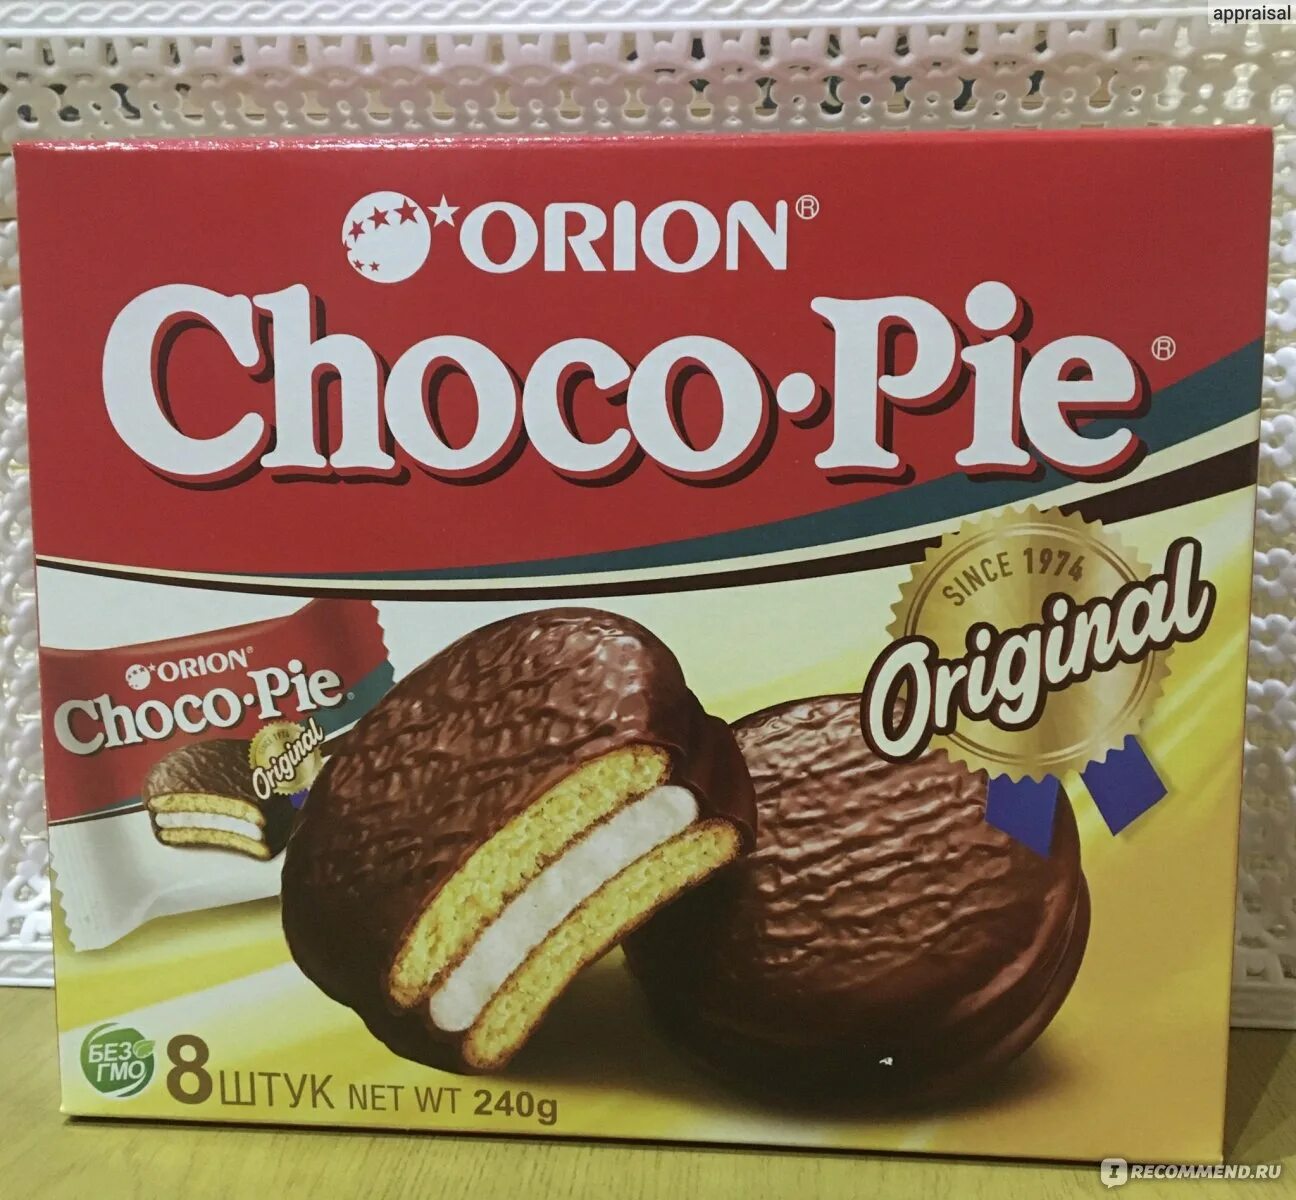 Чоко форум раша. Продукция Орион чокопай. Чокопай Орион 2000. Orion Choco pie производитель. Орион Чоко Пай 6 шт.